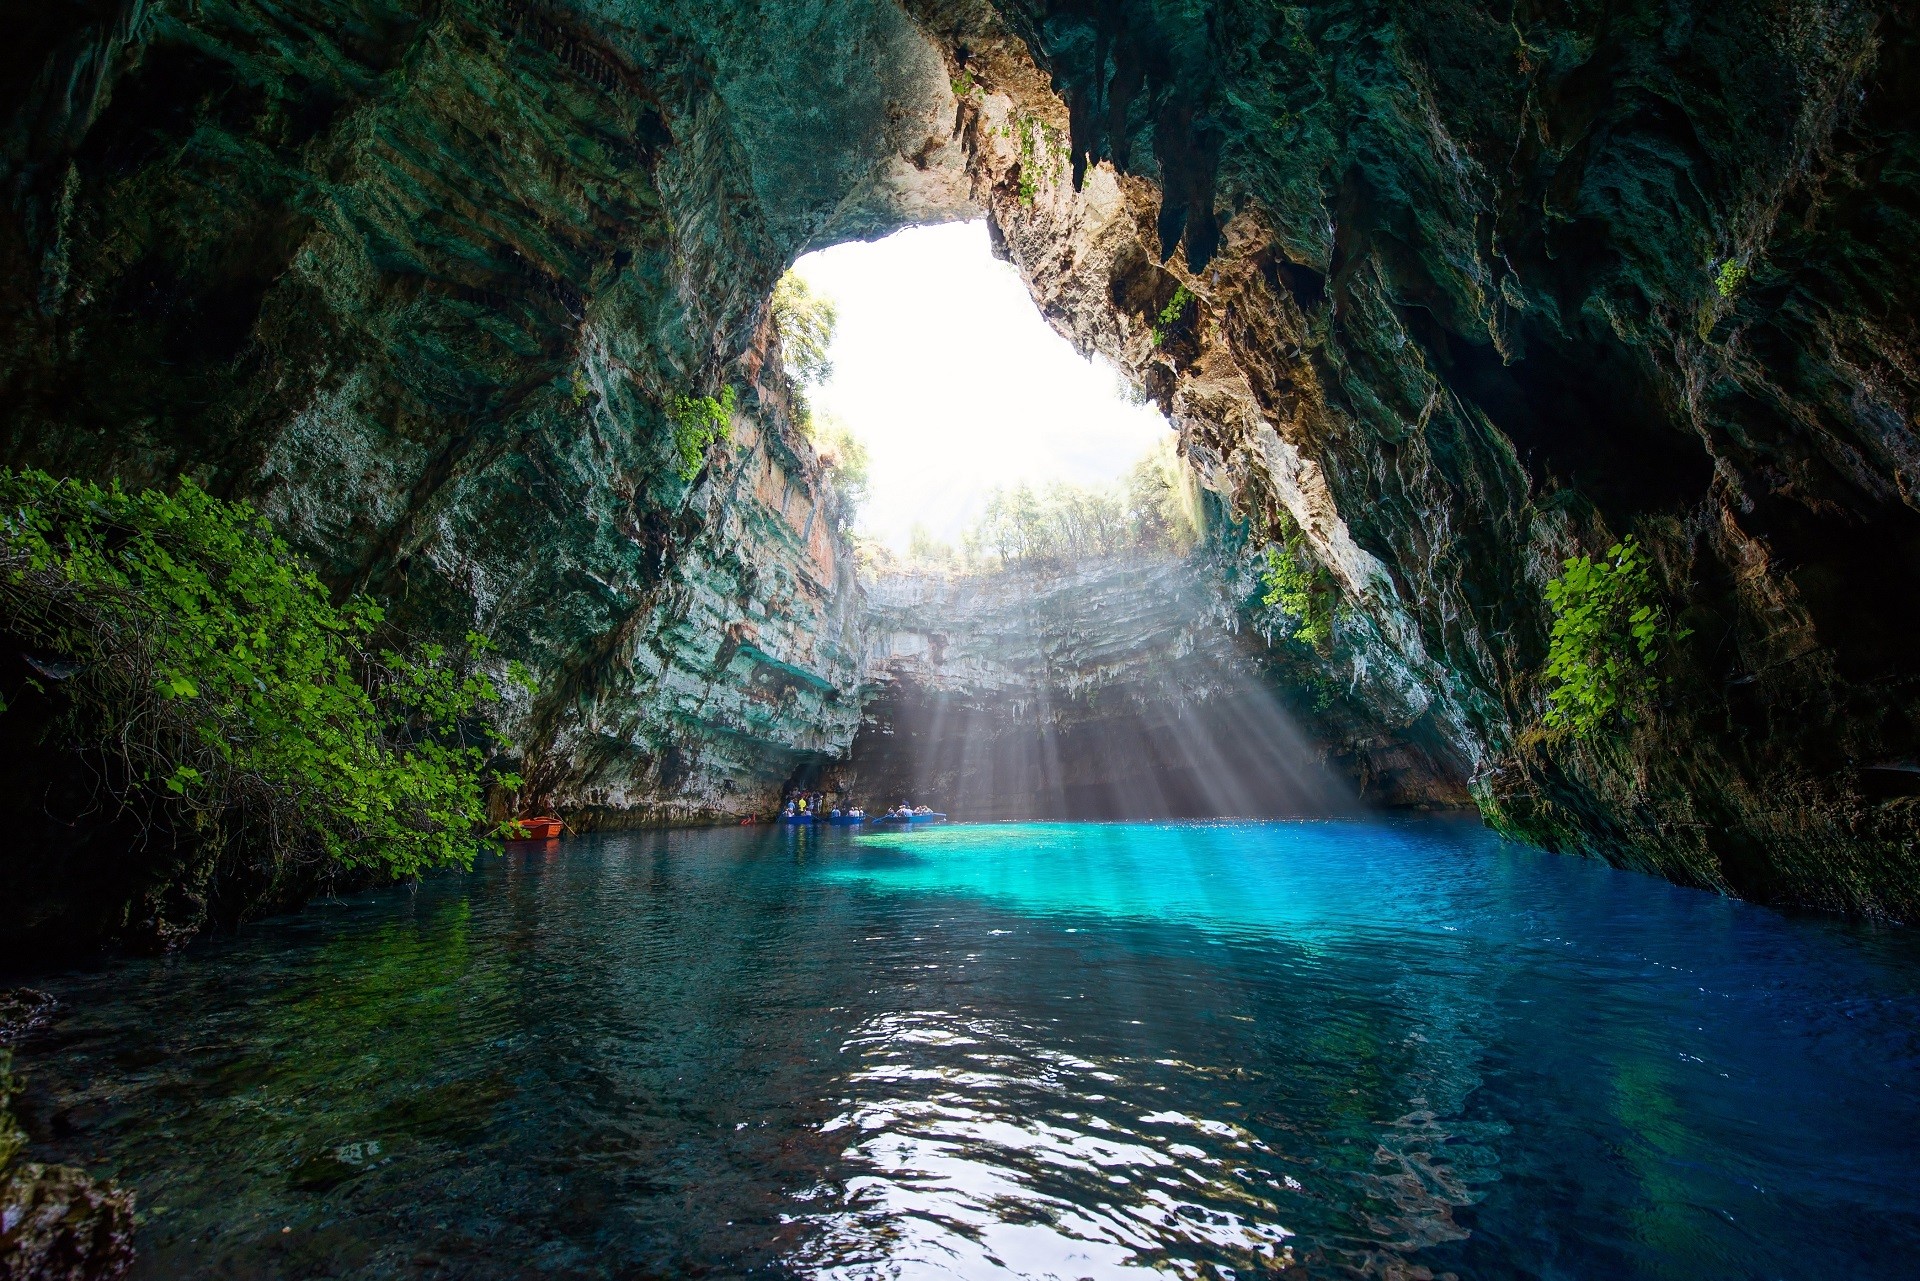 wnętrze jaskini z niebieskim jeziorem i niekompletnym stropem, przez który wpadają promienie słońca